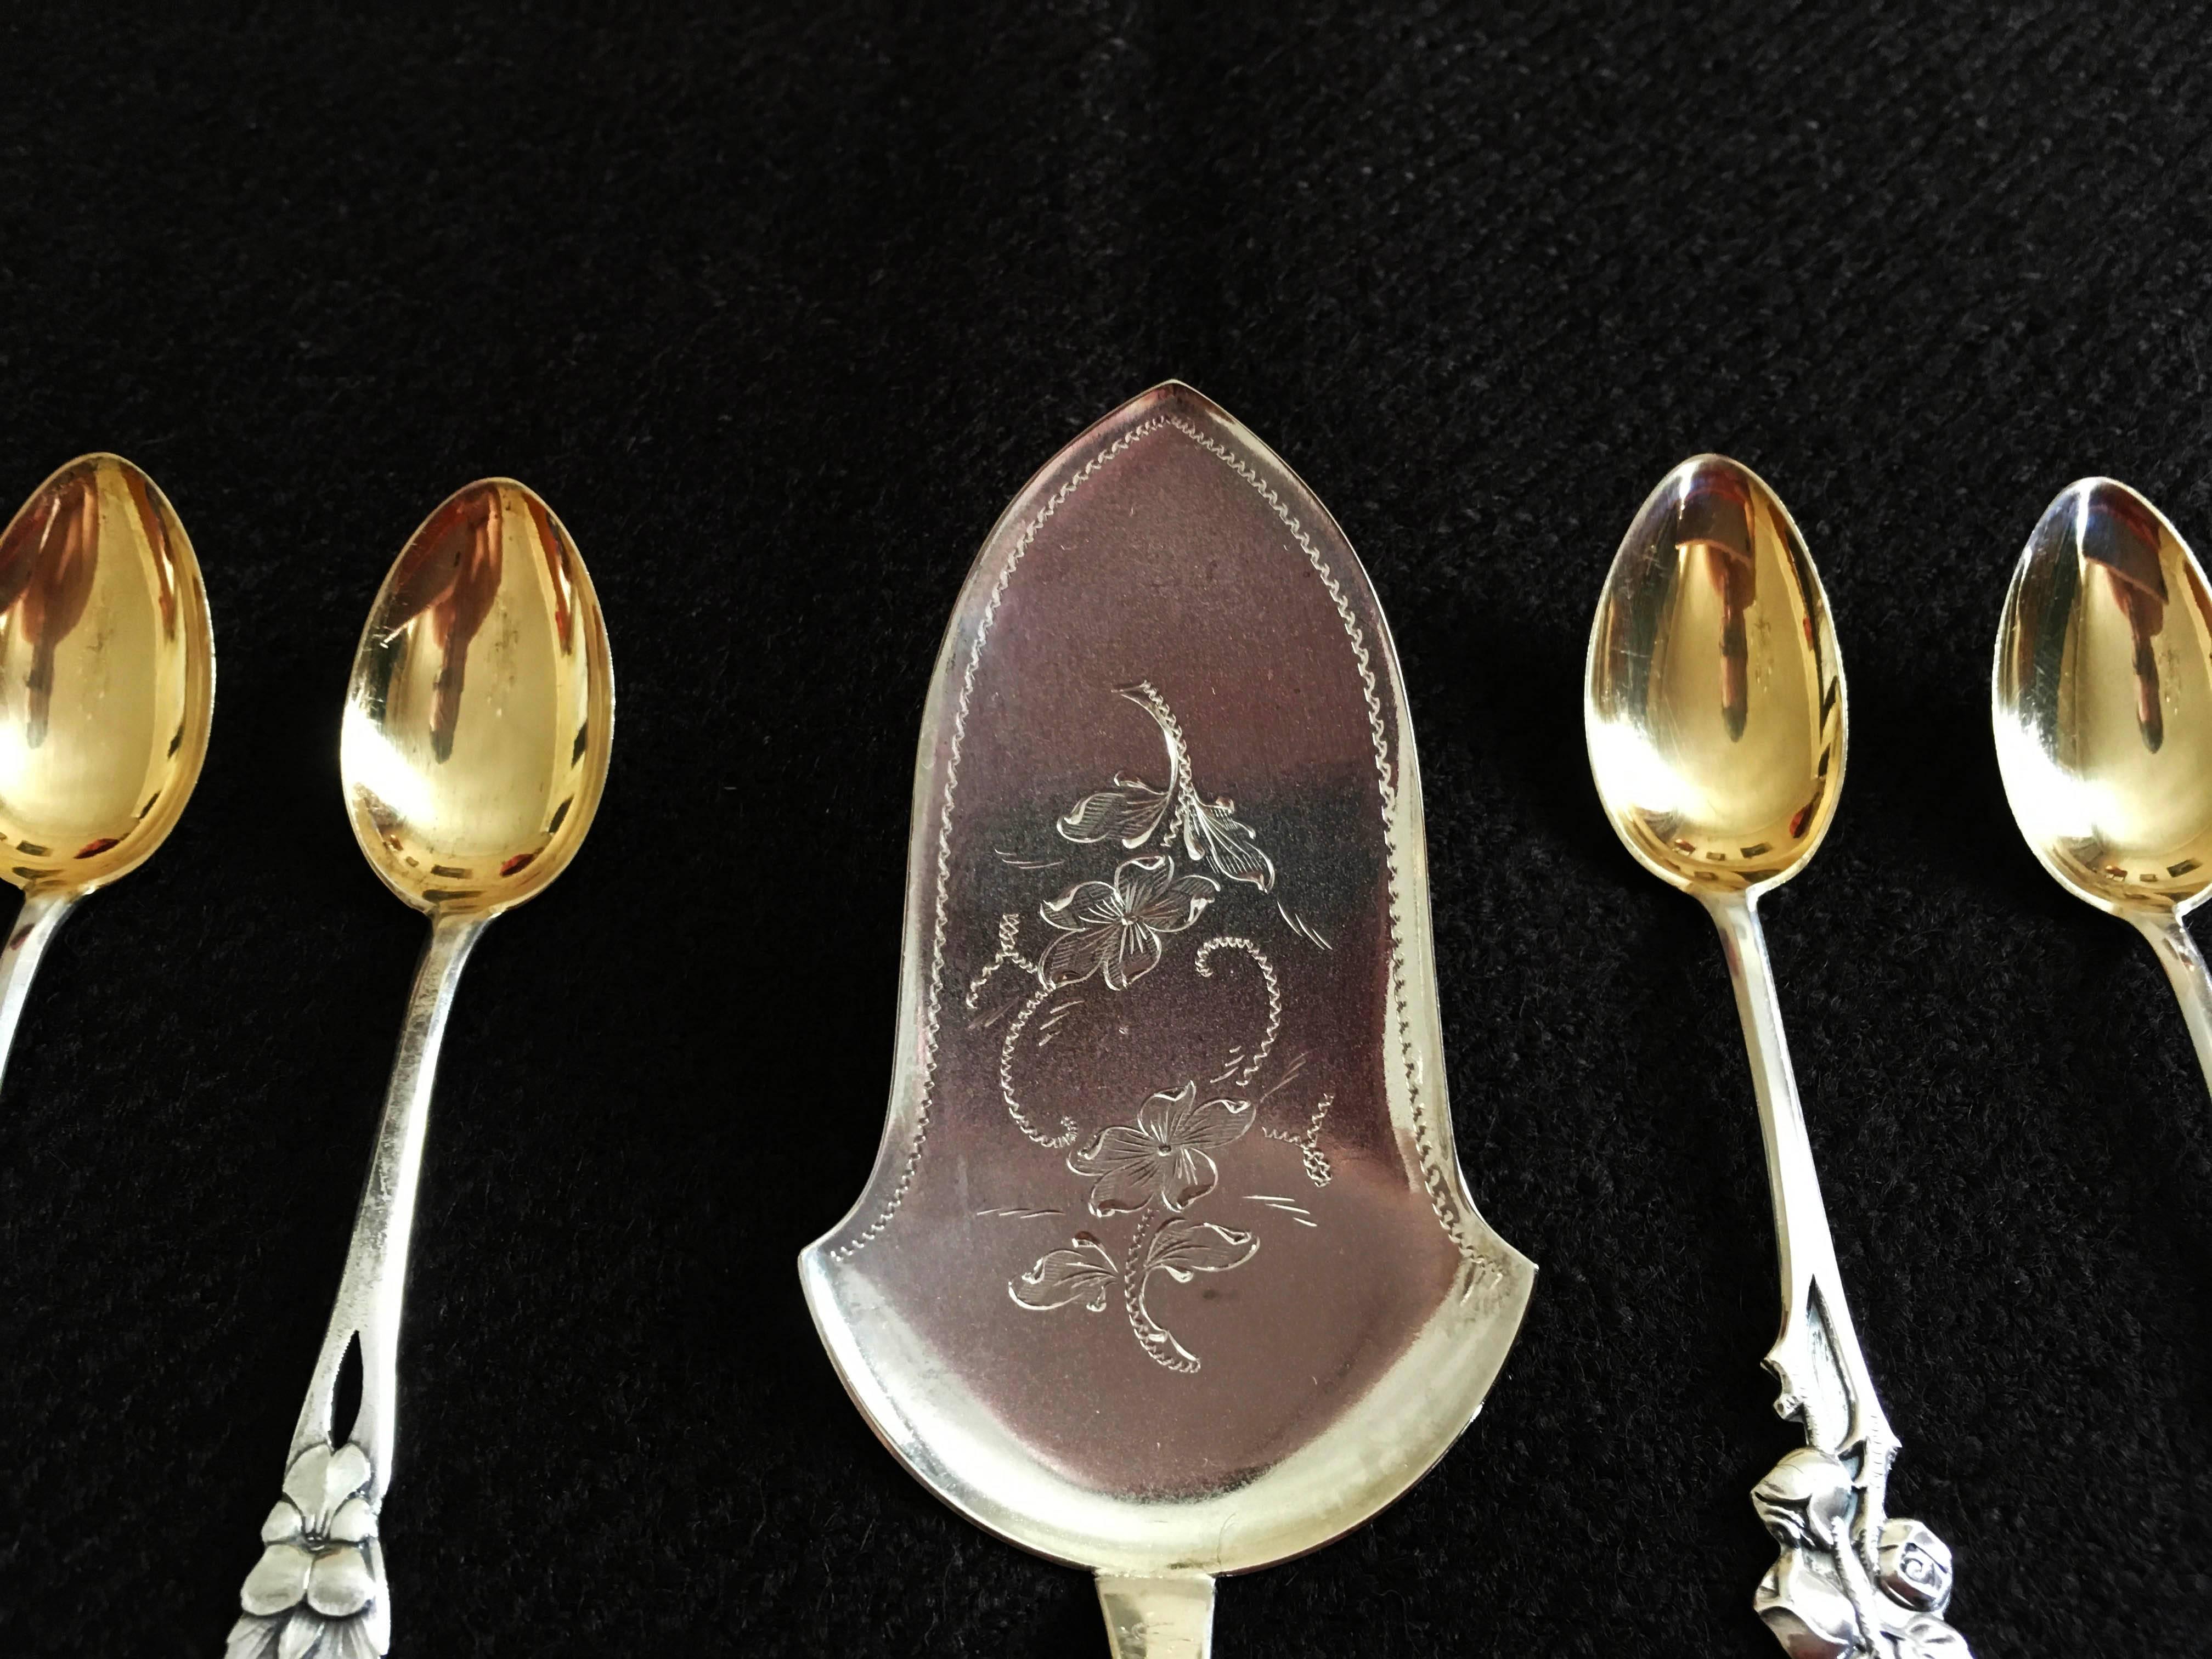 gold tea spoons